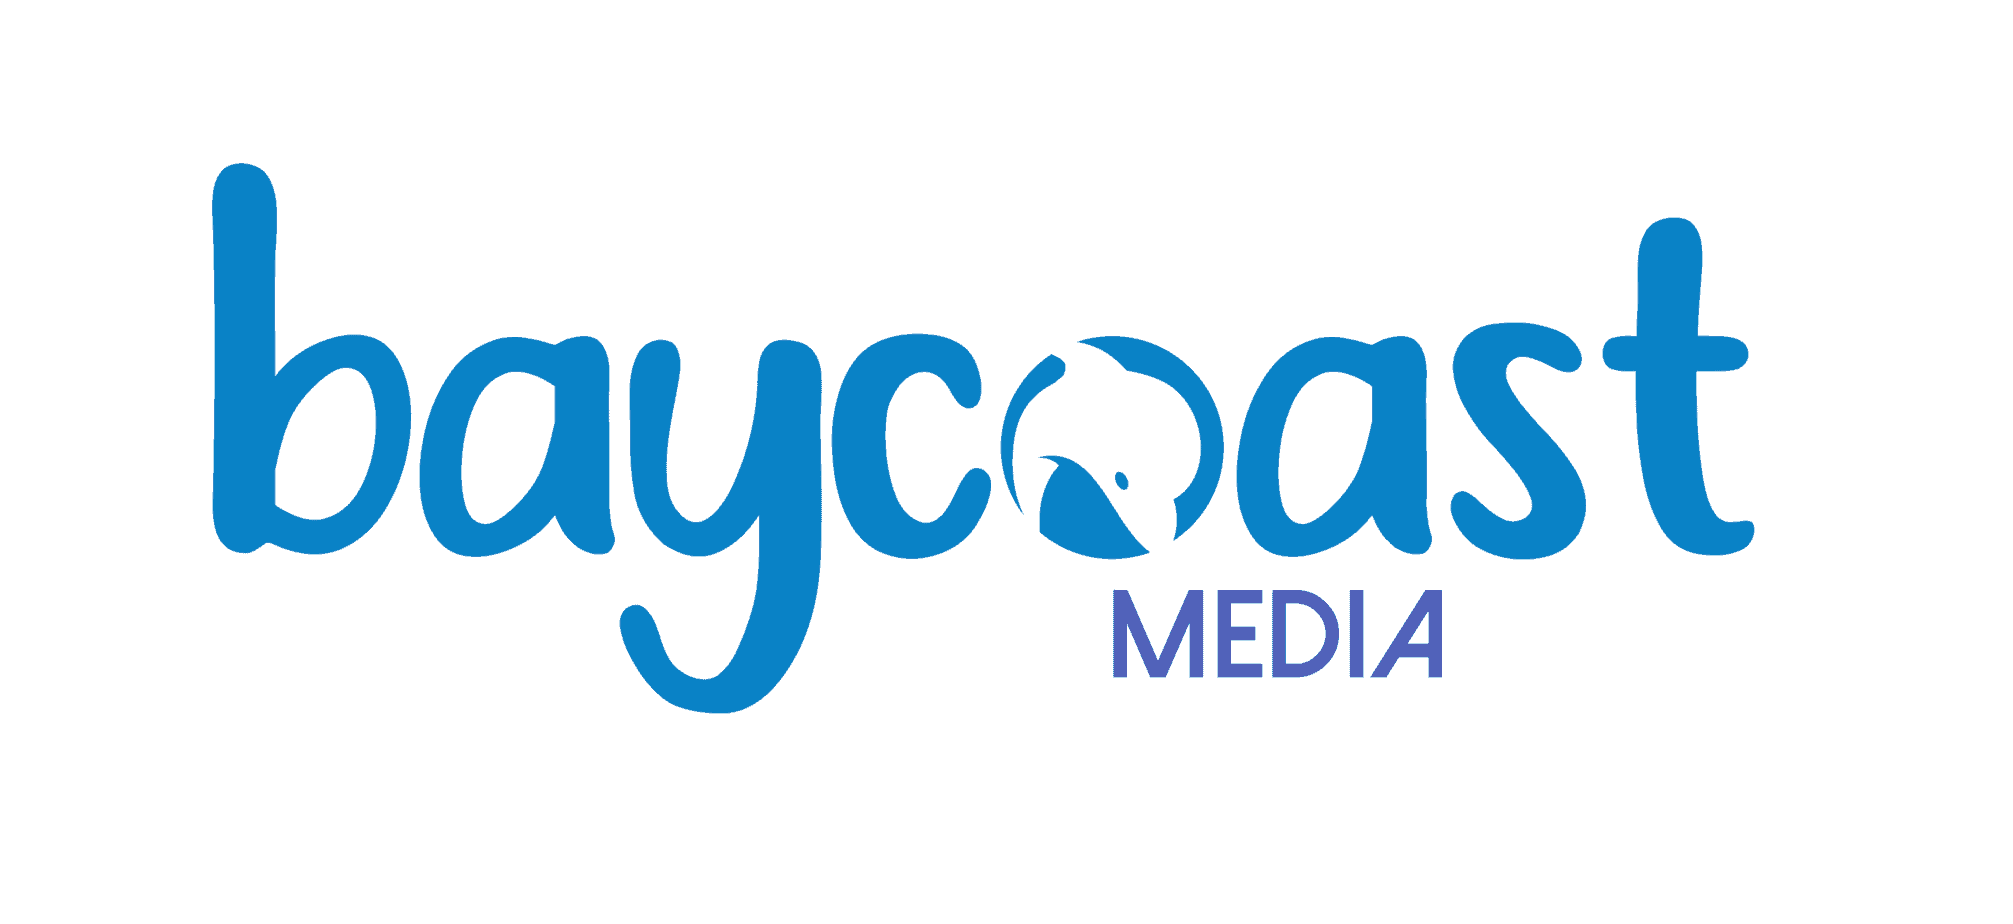 Baycoast Media Logo